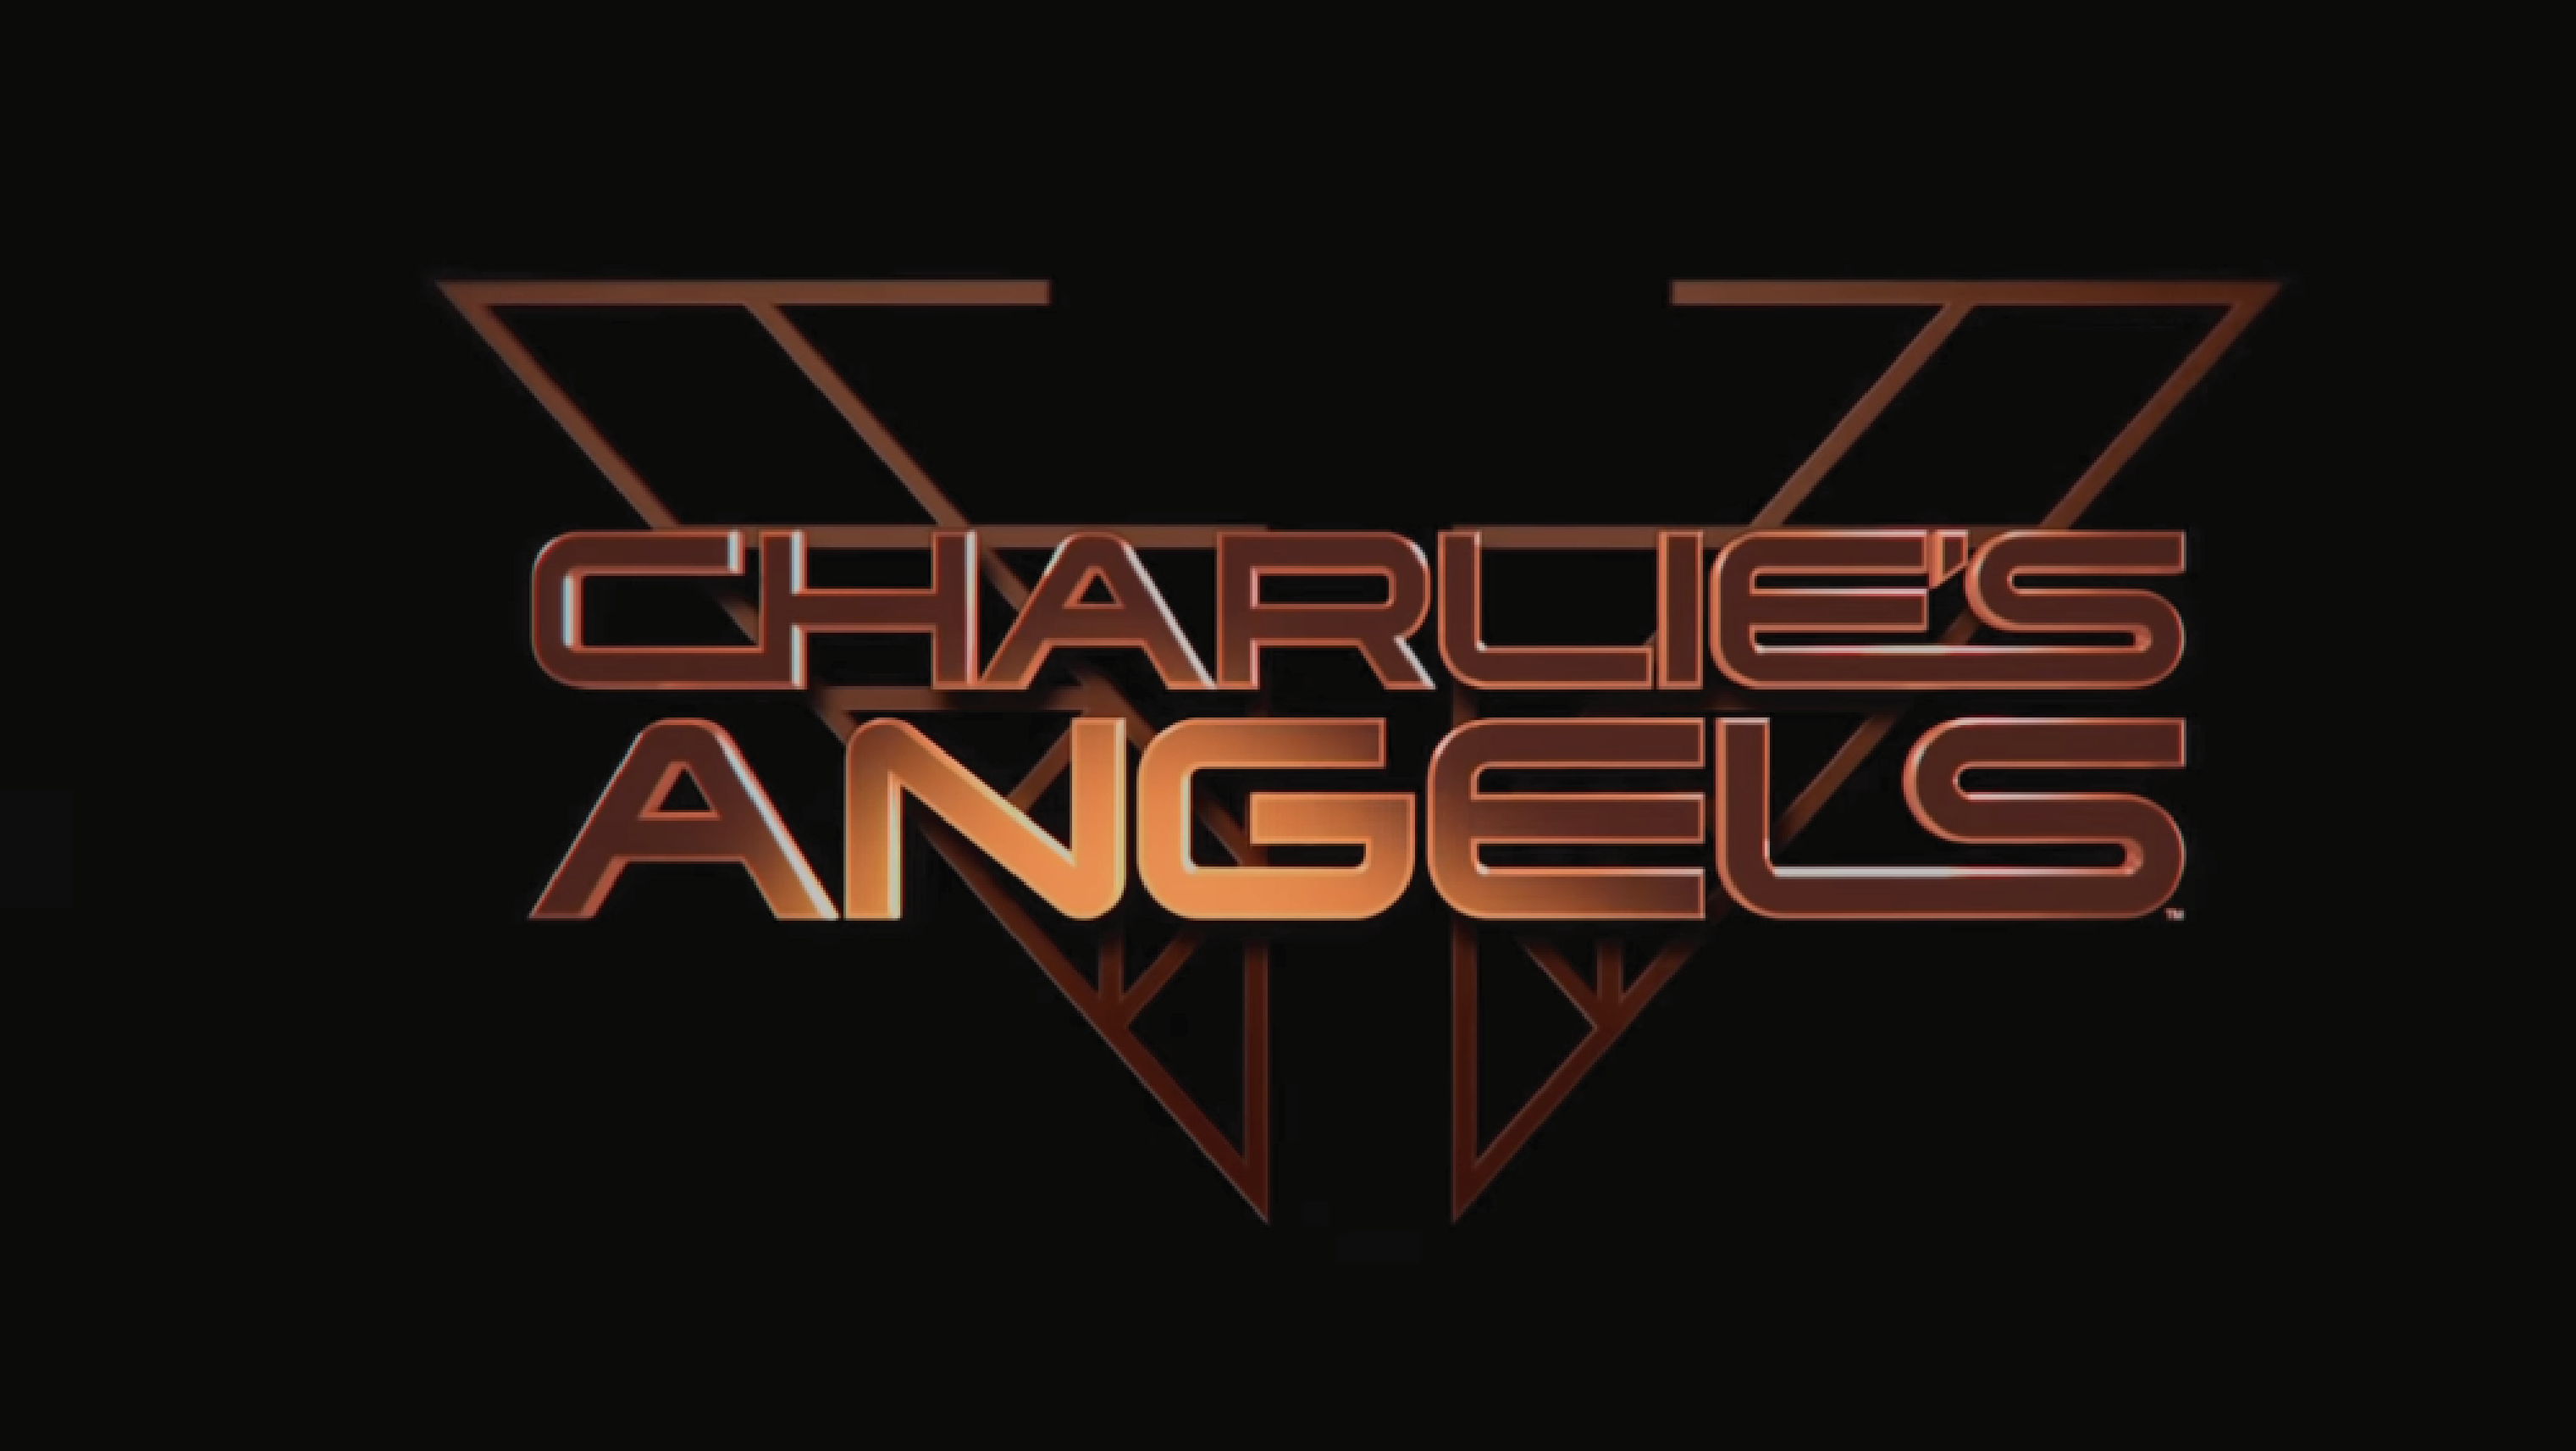 Los Ángeles de Charlie estrena su primer trailer